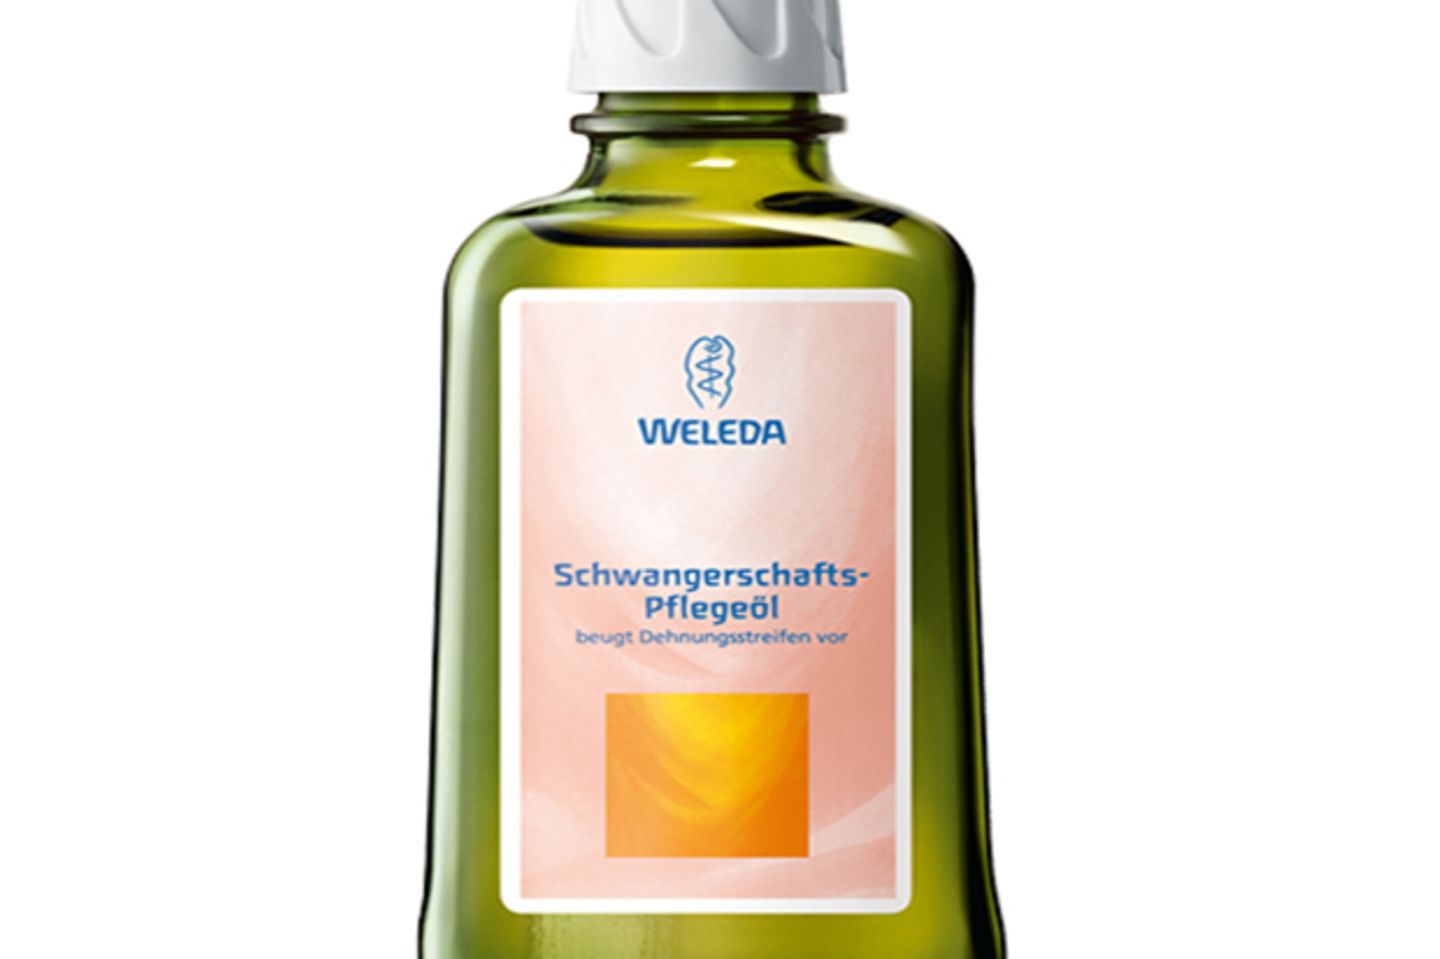 Packen Sie Ihr Lieblingsöl ein, für eine kleine Massage am Morgen ist immer Zeit! Das Schwangerschaftsöl von Weleda finden Sie zum Beispiel unter www.shop-apotheke.com (Preis: 10,69€)